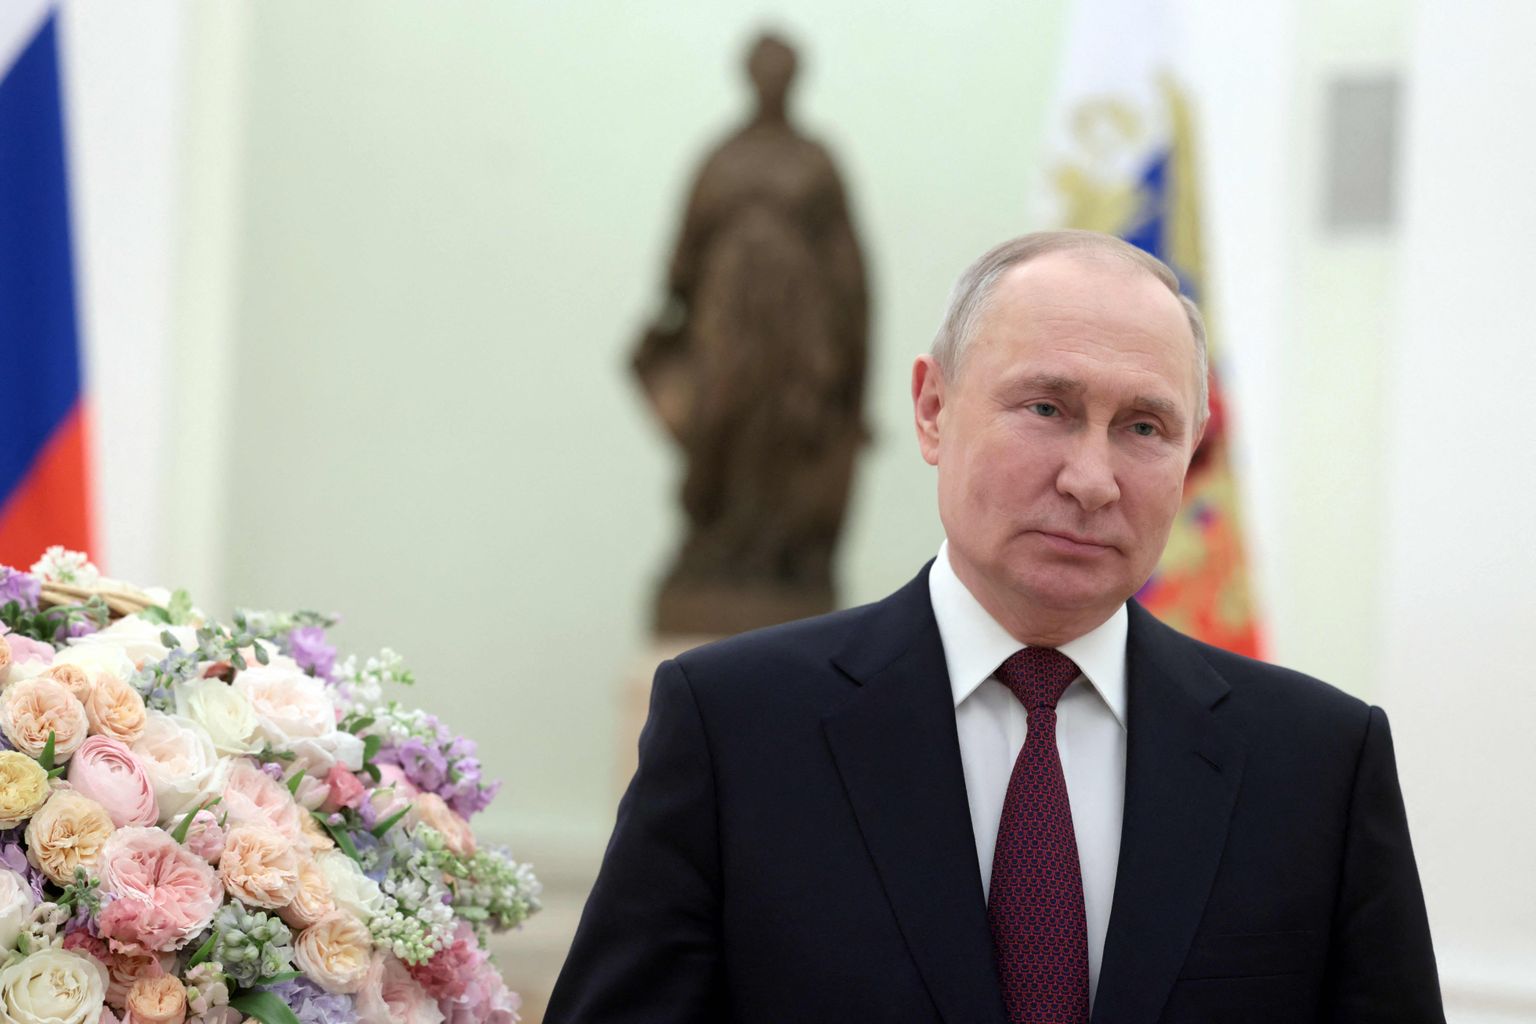 Venemaa president Vladimir Putin pöördus videos rahvusvahelisel naistepäeval 8. märtsil 2023 Vene naiste poole